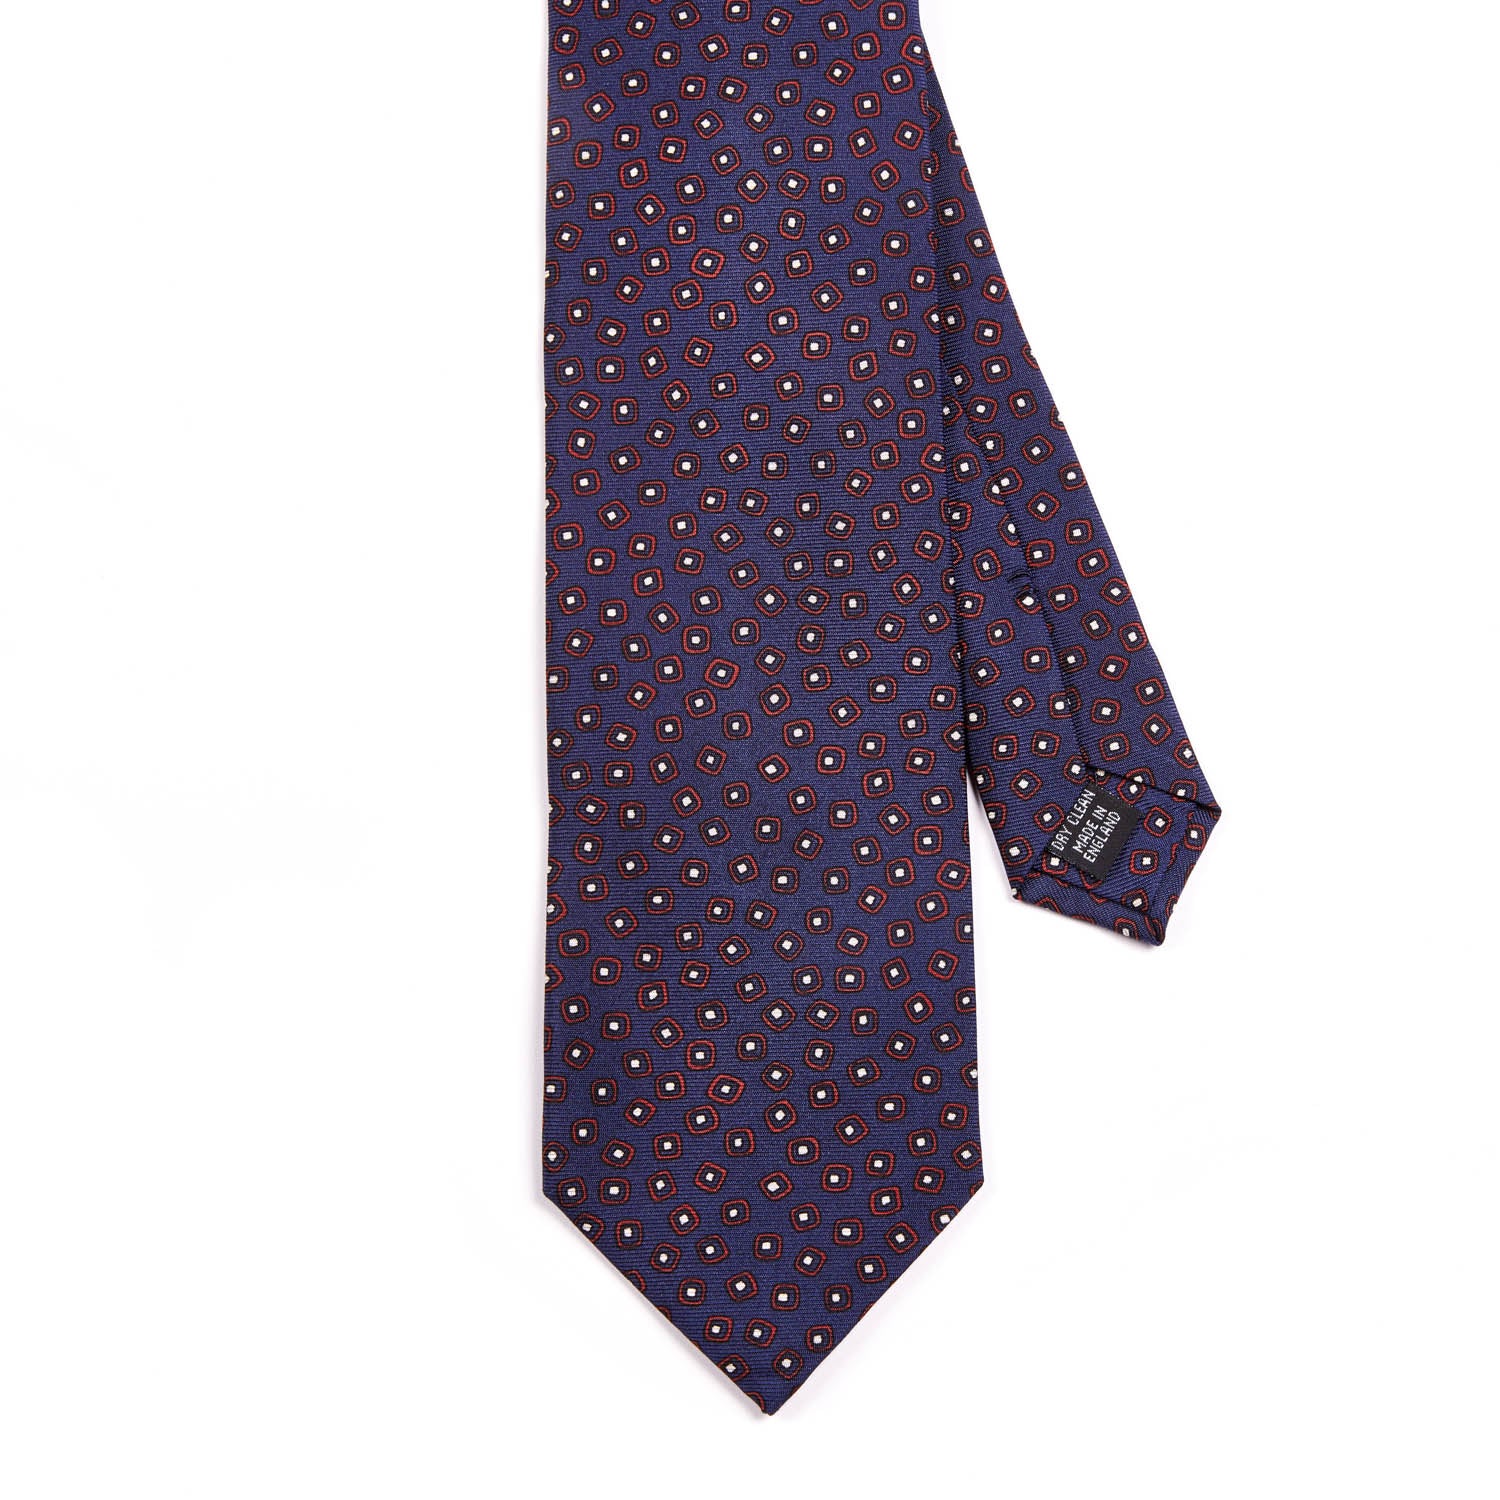 Sovereign Grade Navy/Red Eton Printed Silk Tie, 150cm